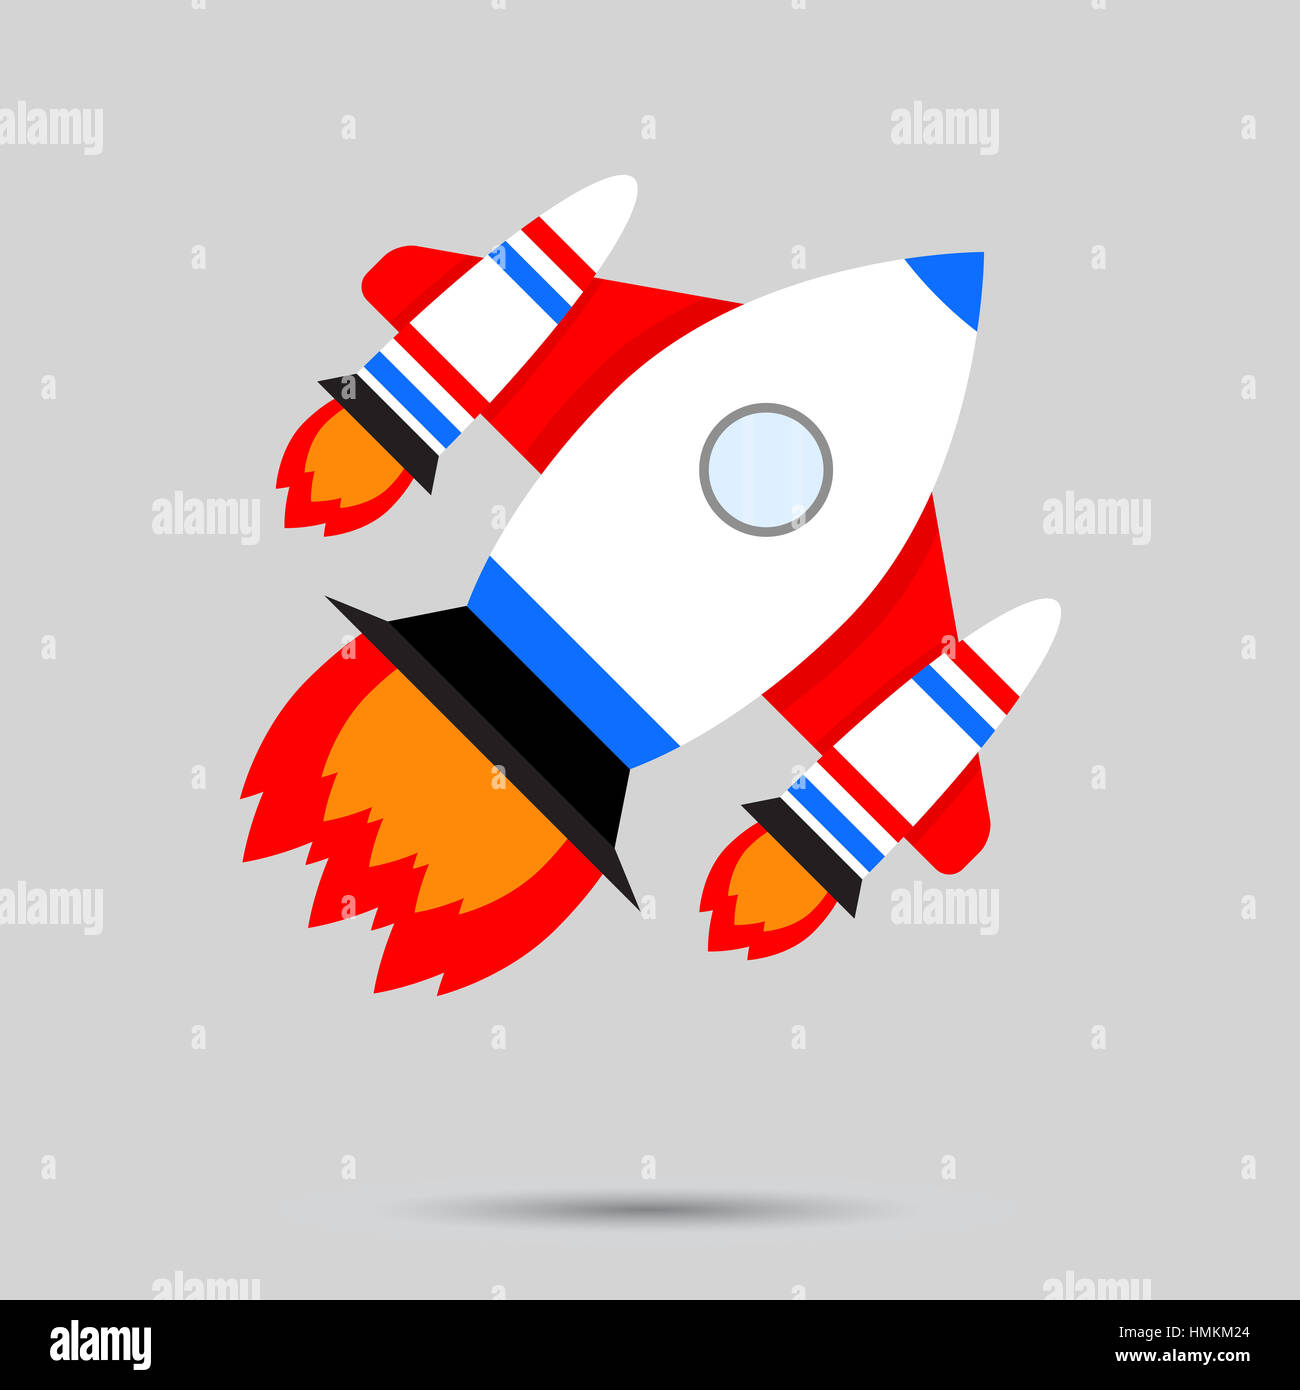 Start Raumzeiger. Business Startup Rakete Produkteinführung Abbildung Stockfoto